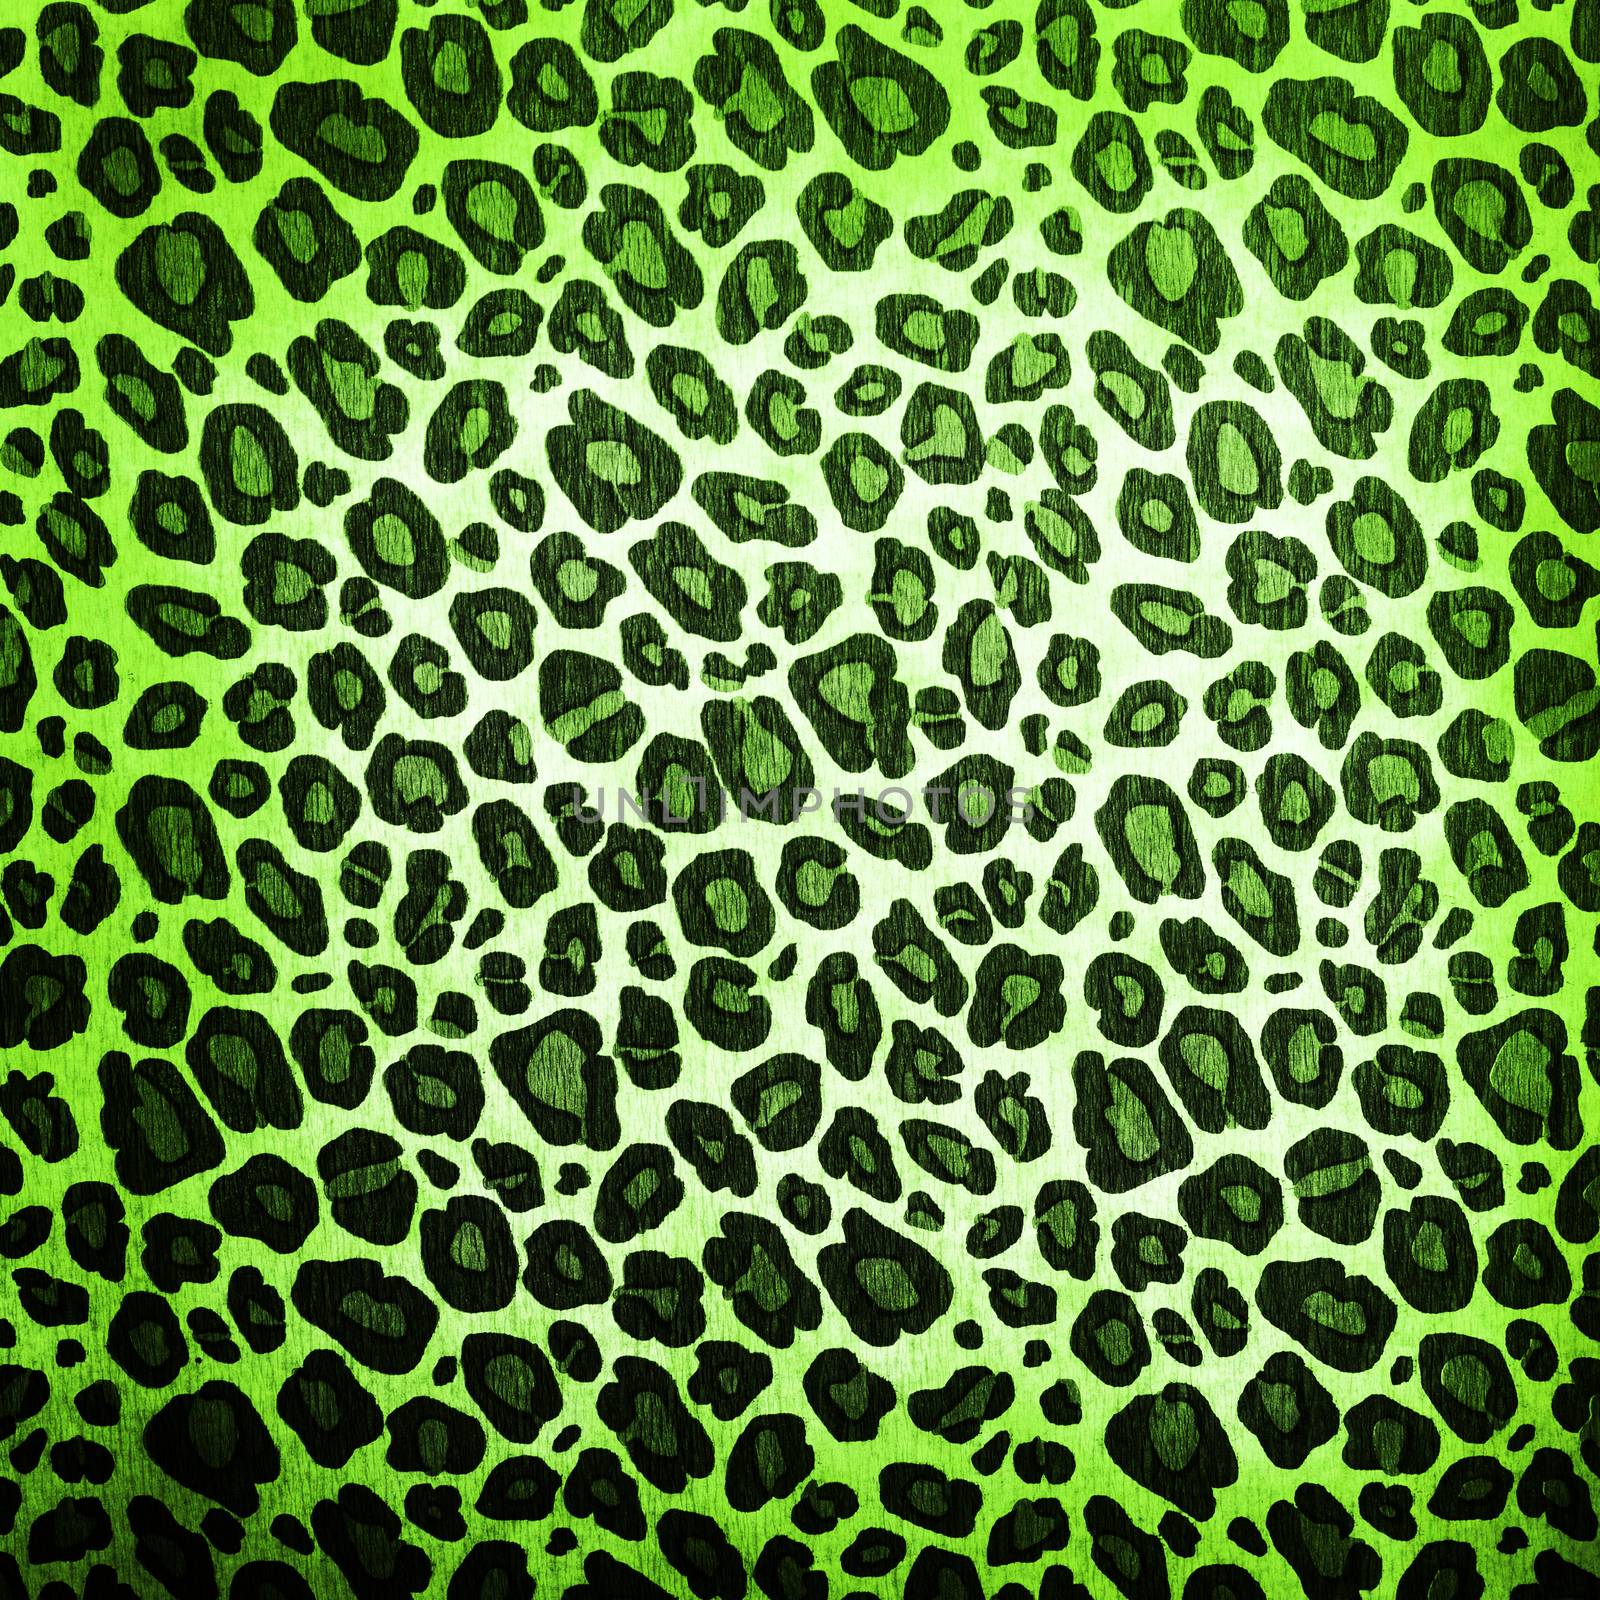 Leopard pattern by kwasny221